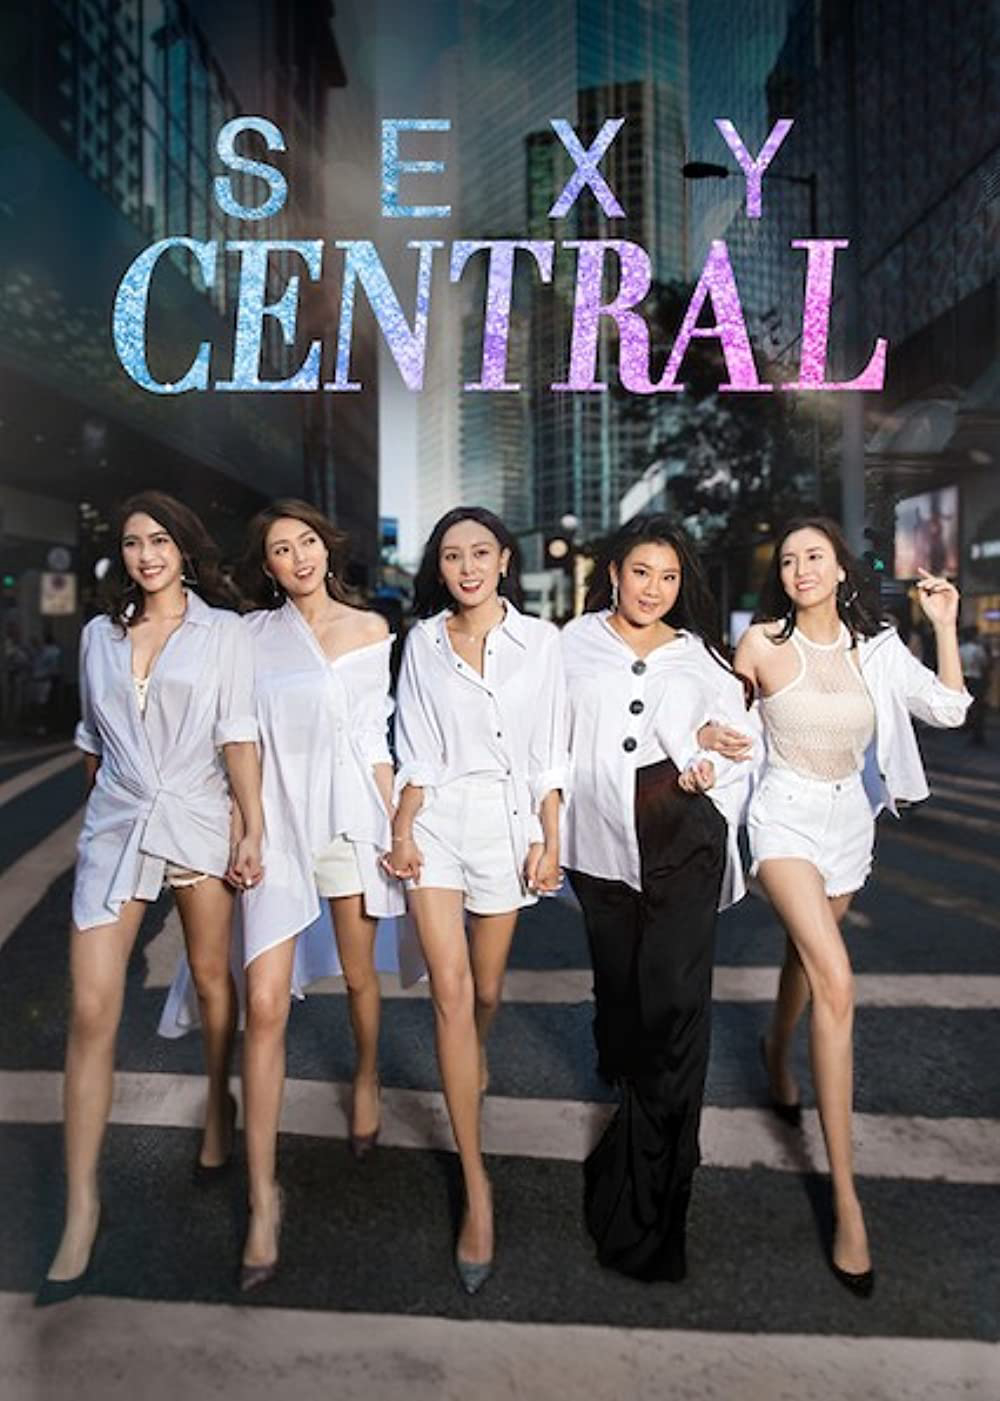 Poster Phim Phái đẹp quận Trung Hoàn (Sexy Central)